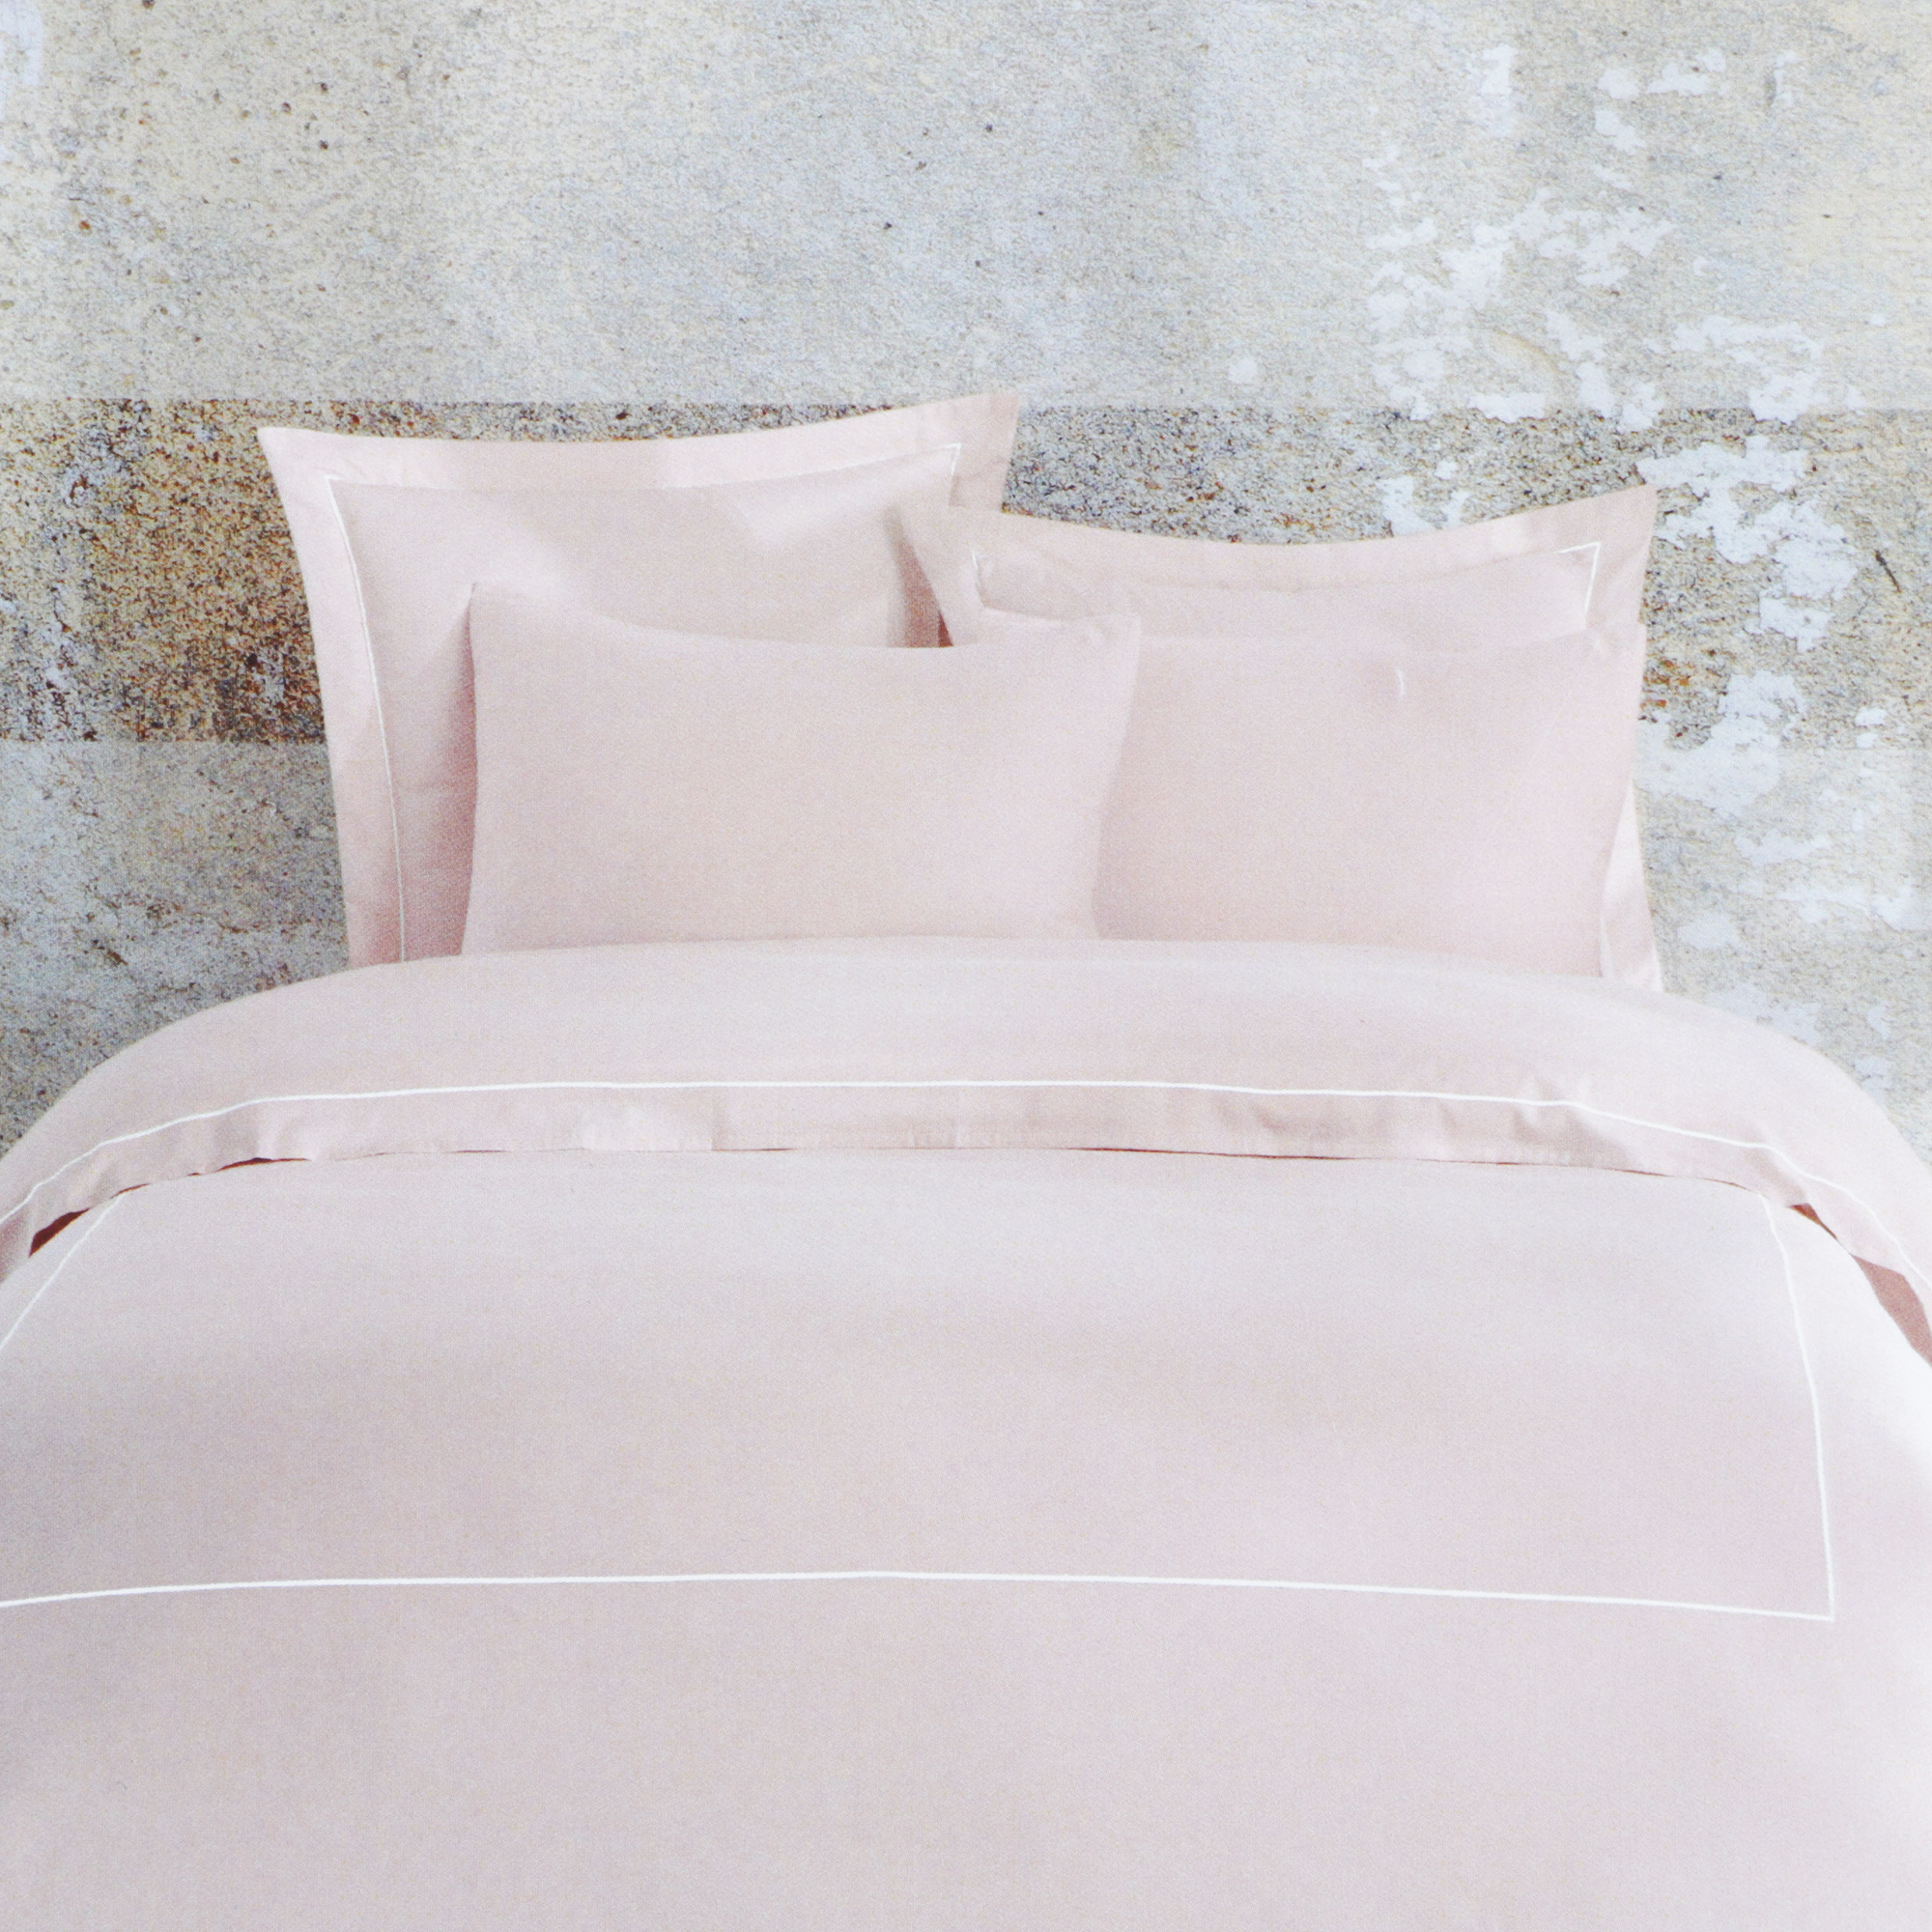 Комплект постельного белья Bella casa Stripes бело-розовое Кинг сайз